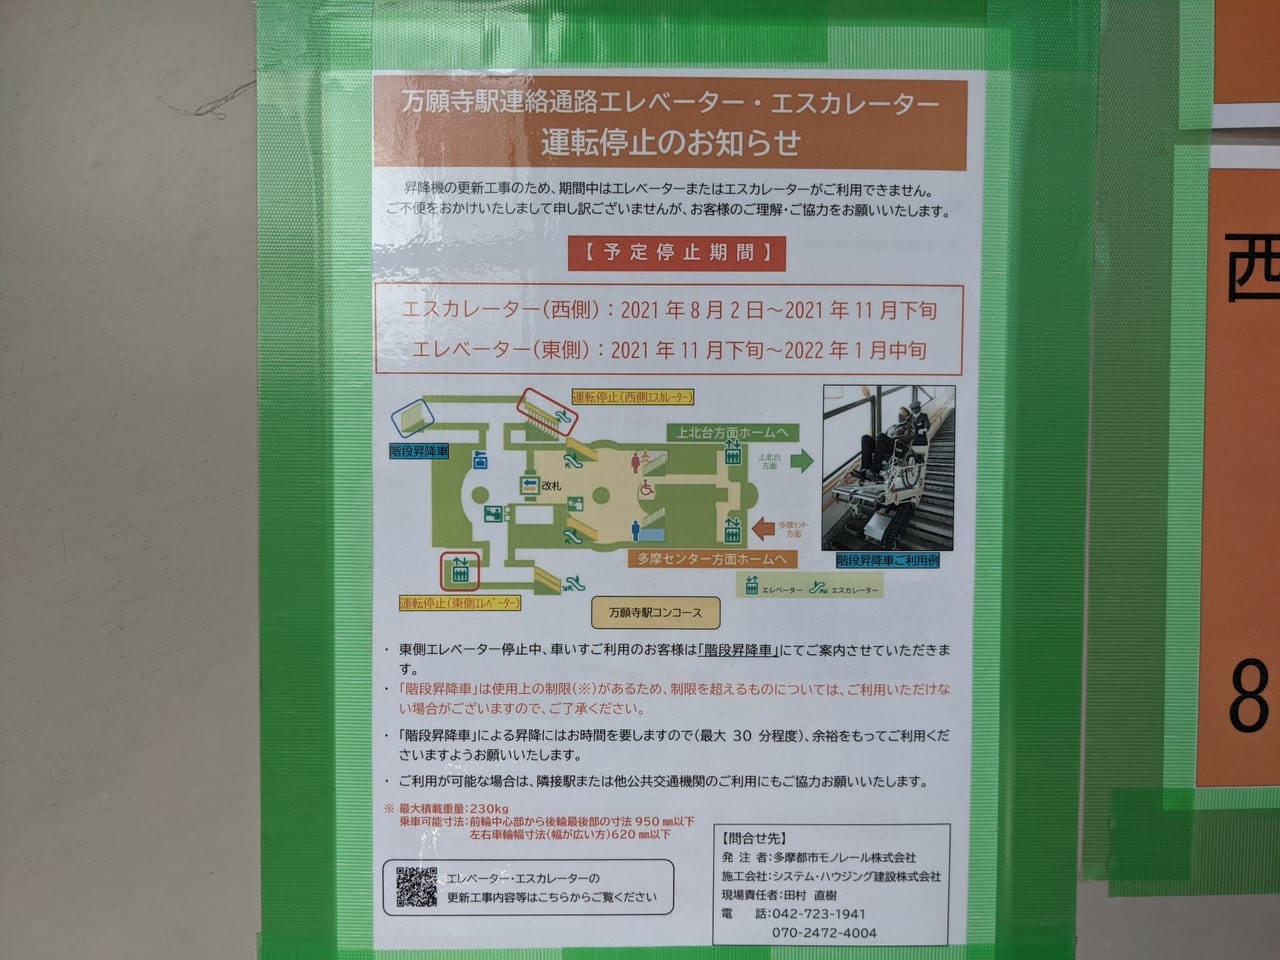 日野市 モノレール万願寺駅が工事中 西側のエレベーターは使えません 車いす ベビーカーの方はご注意を 号外net 日野市